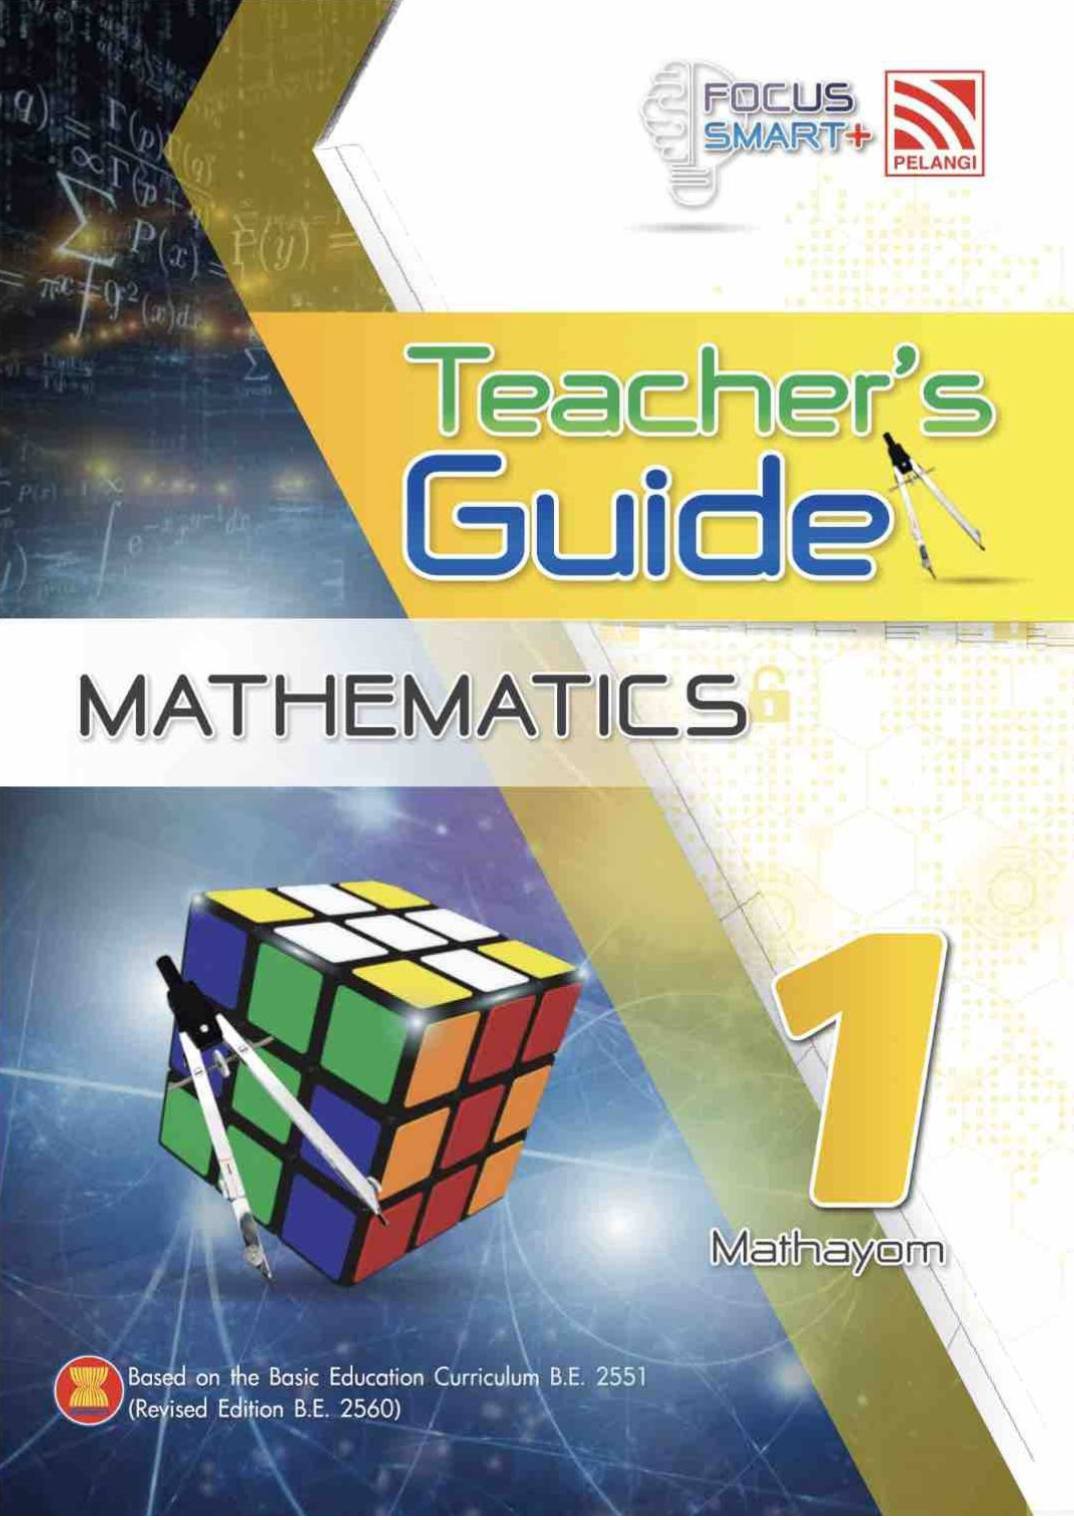 Pelangi Focus Smart Plus Mathematics M1 Teacher Guide